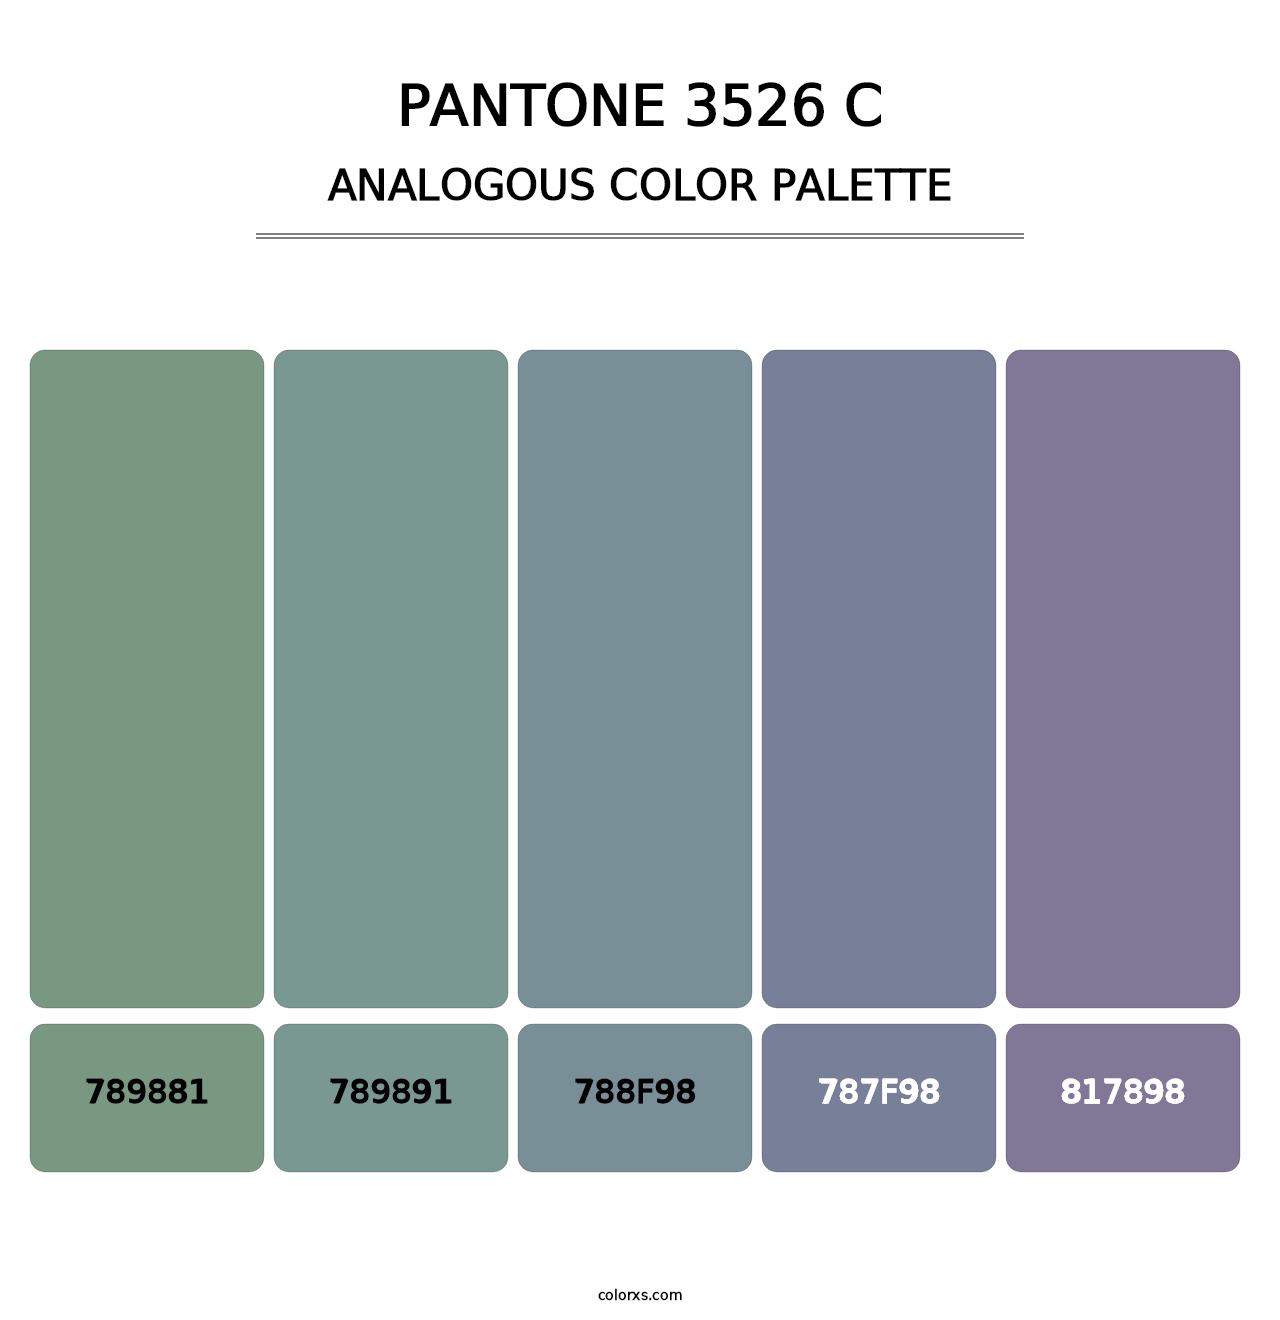 PANTONE 3526 C - Analogous Color Palette